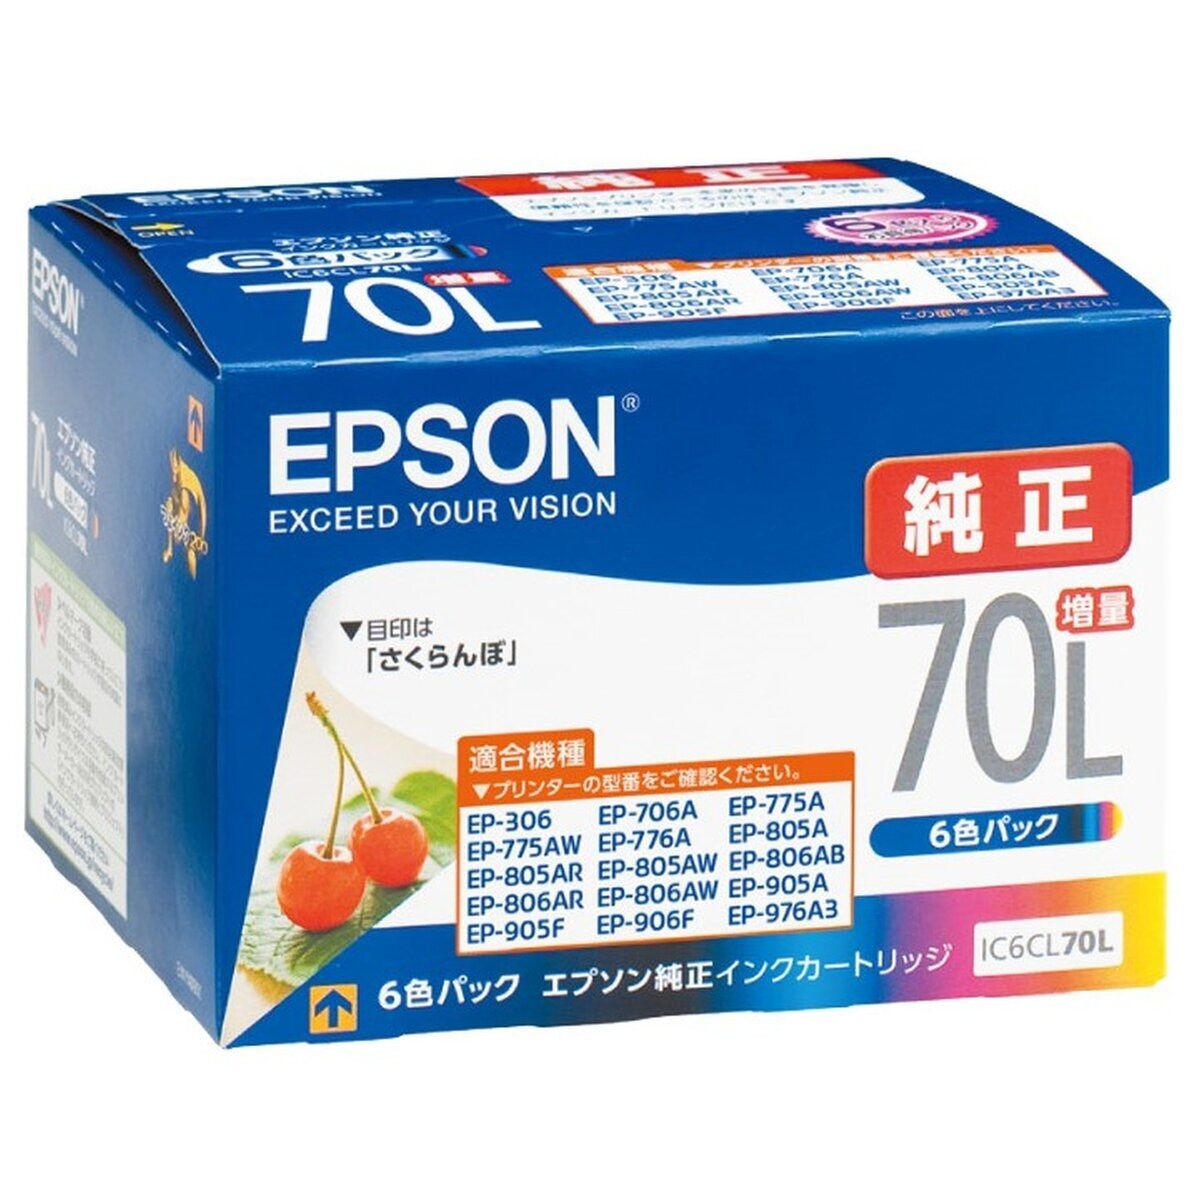 エプソンインクカートリッジ IC6CL70L 6色パック 増量 さくらんぼ | Costco Japan